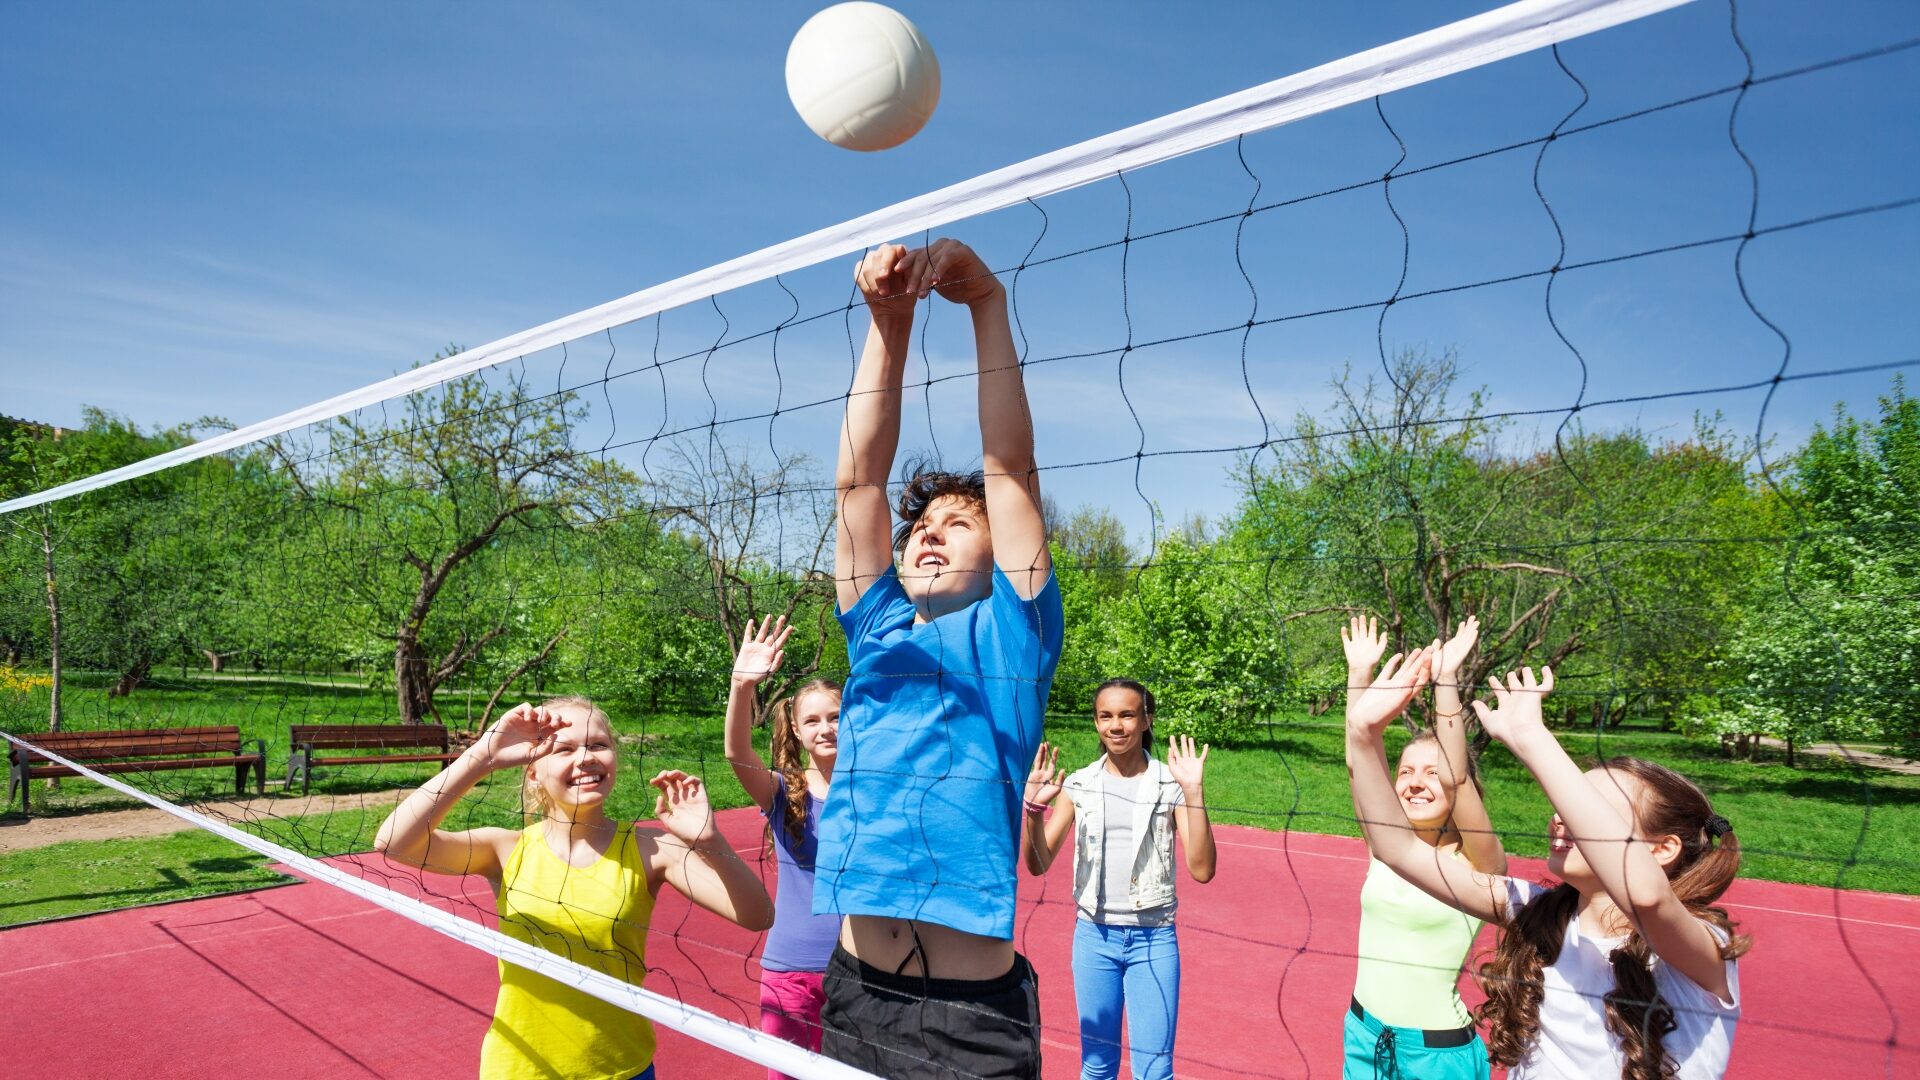 Nastolatkowie z podniesionymi rękami grają w siatkówkę